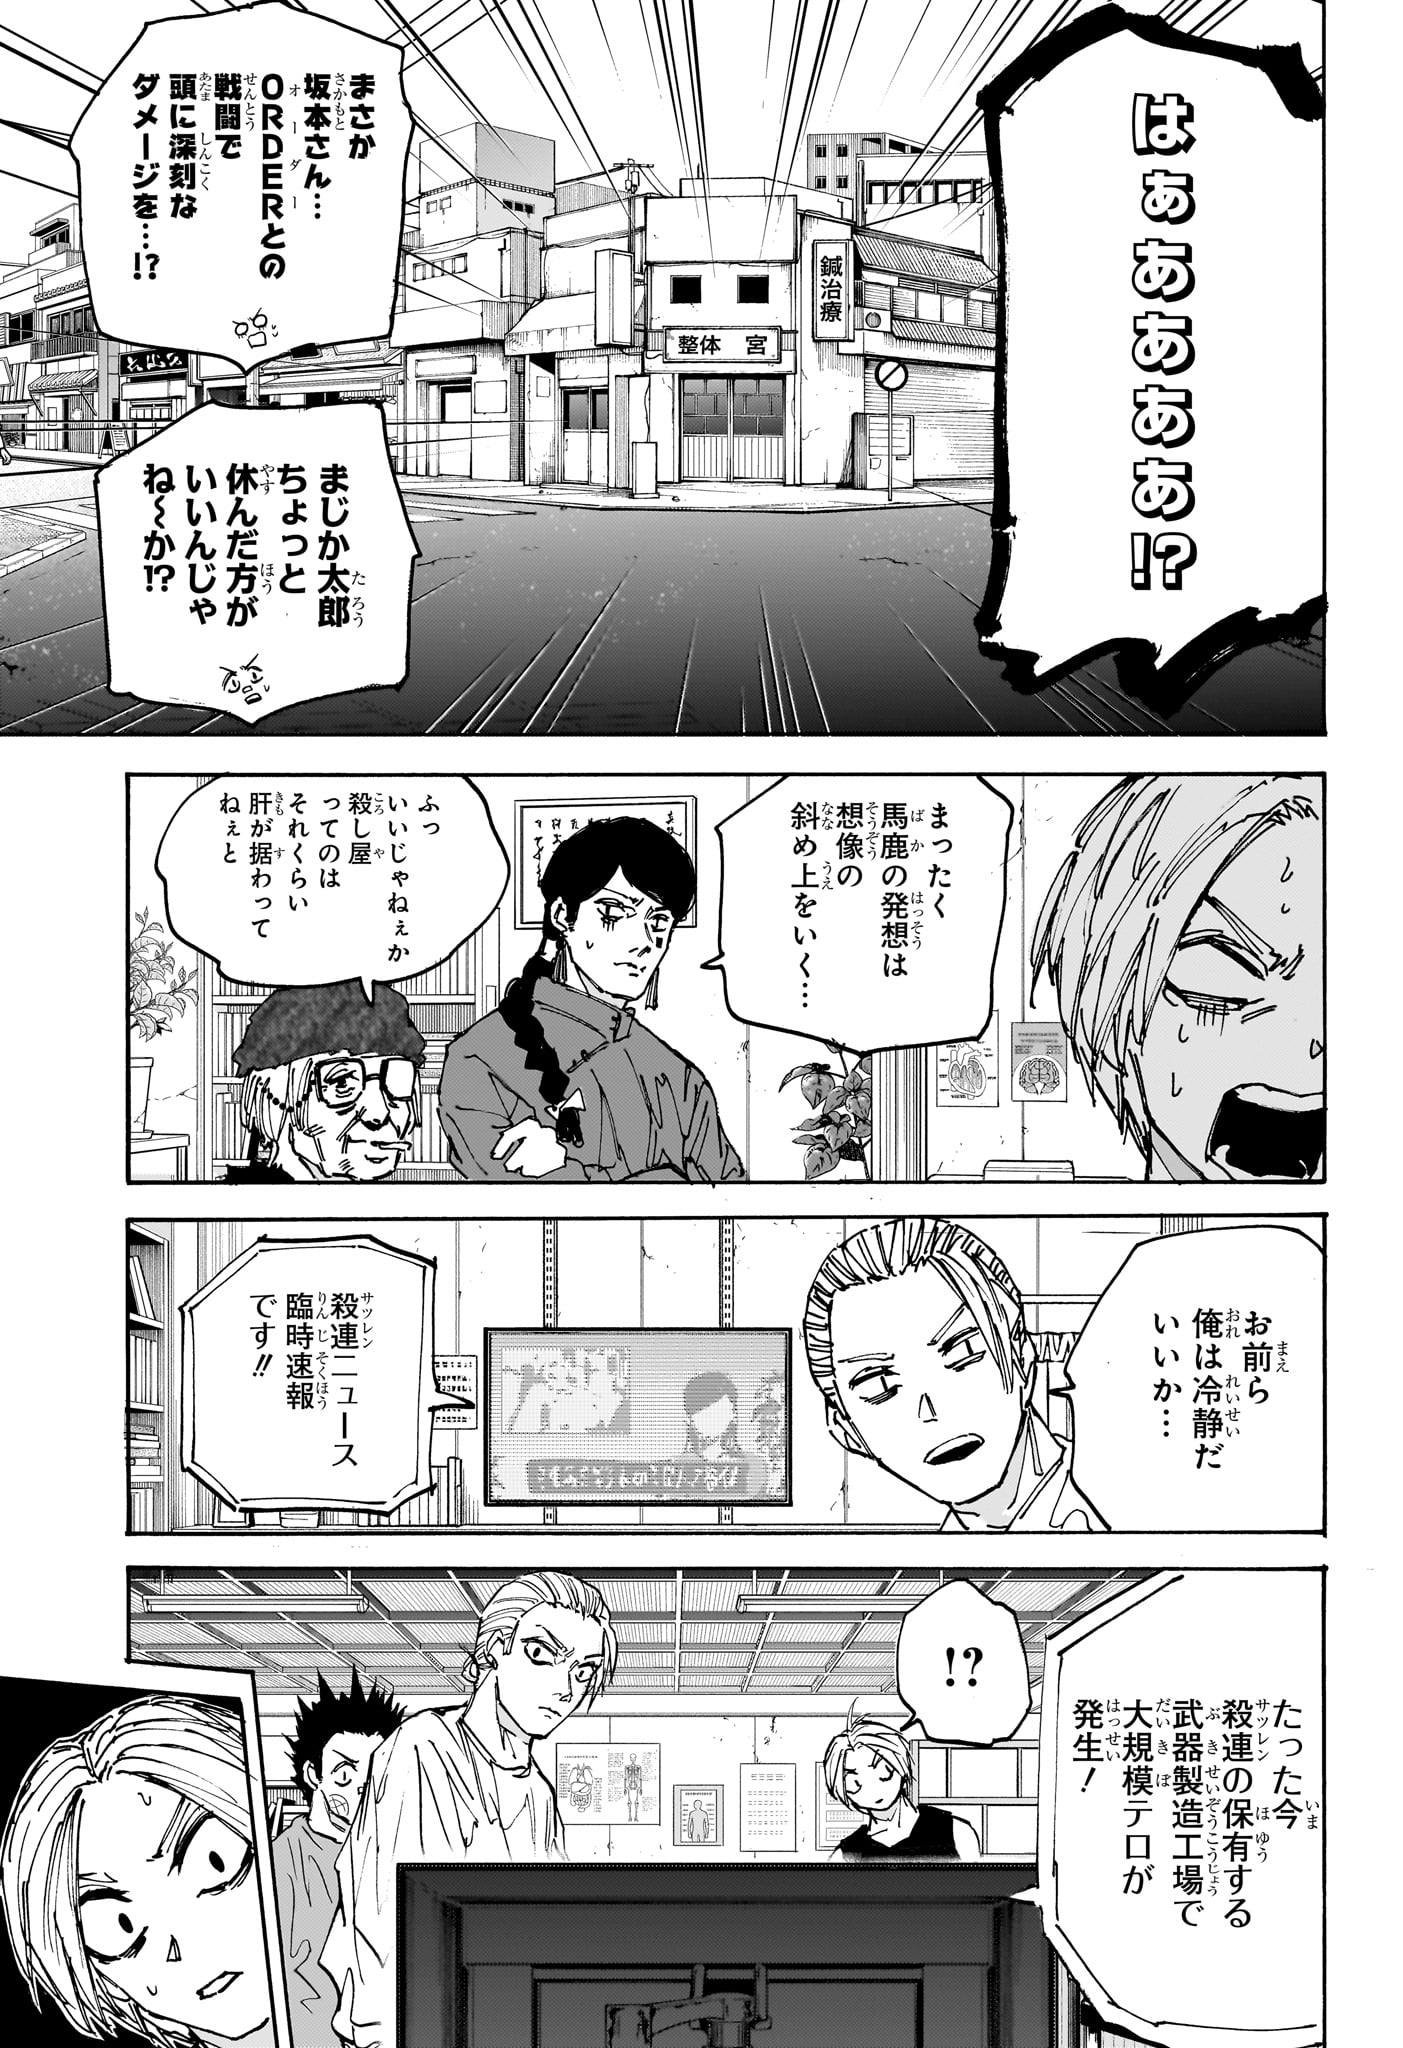 Sakamoto Days - Chapter 171 - Page 17